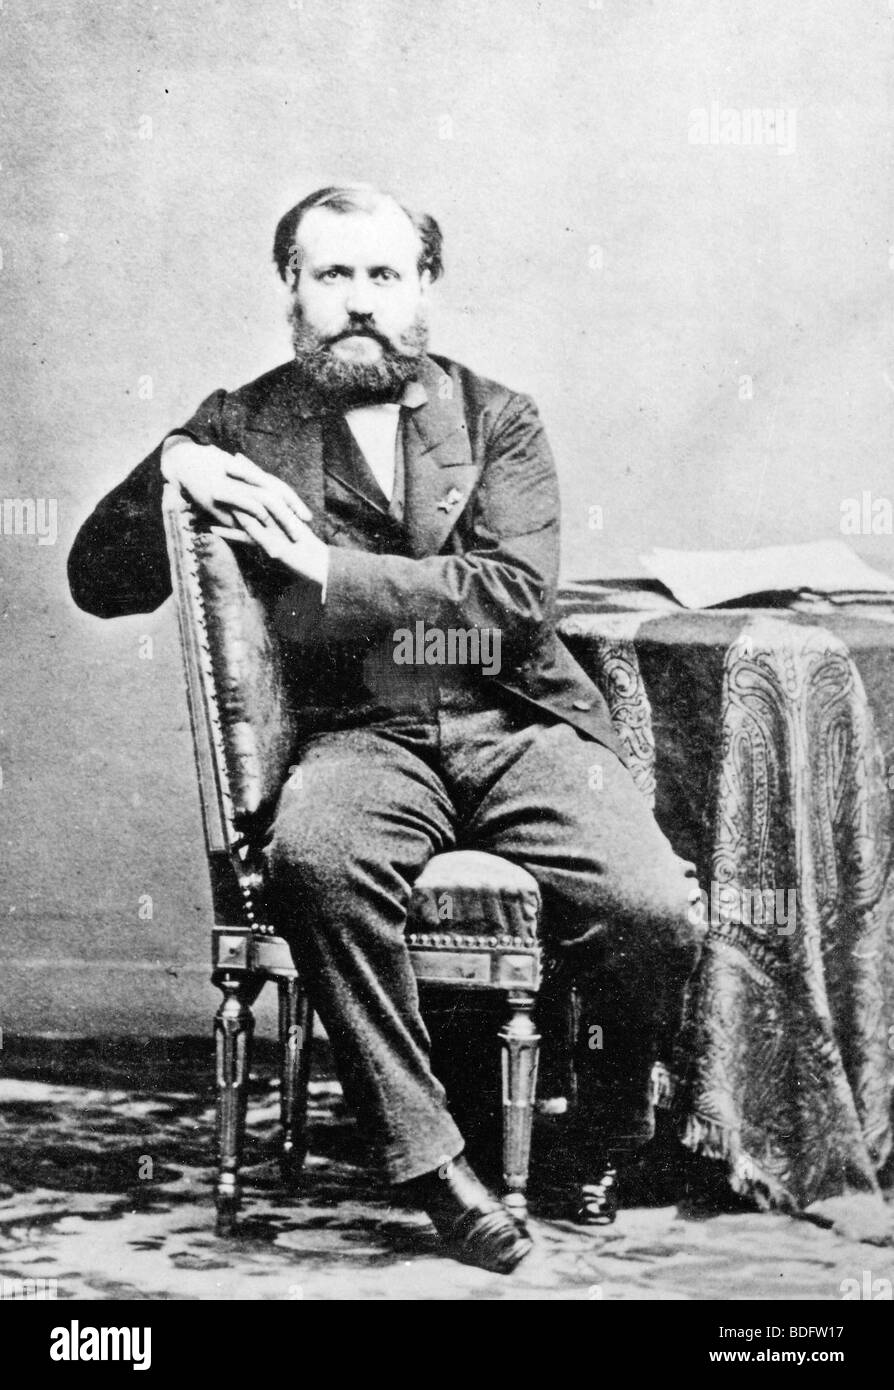 CHARLES GOUNOD (1818-1893) französischer Komponist von Opern Faust, auch viele Lieder, Kirchenmusik und Sinfonien. Stockfoto